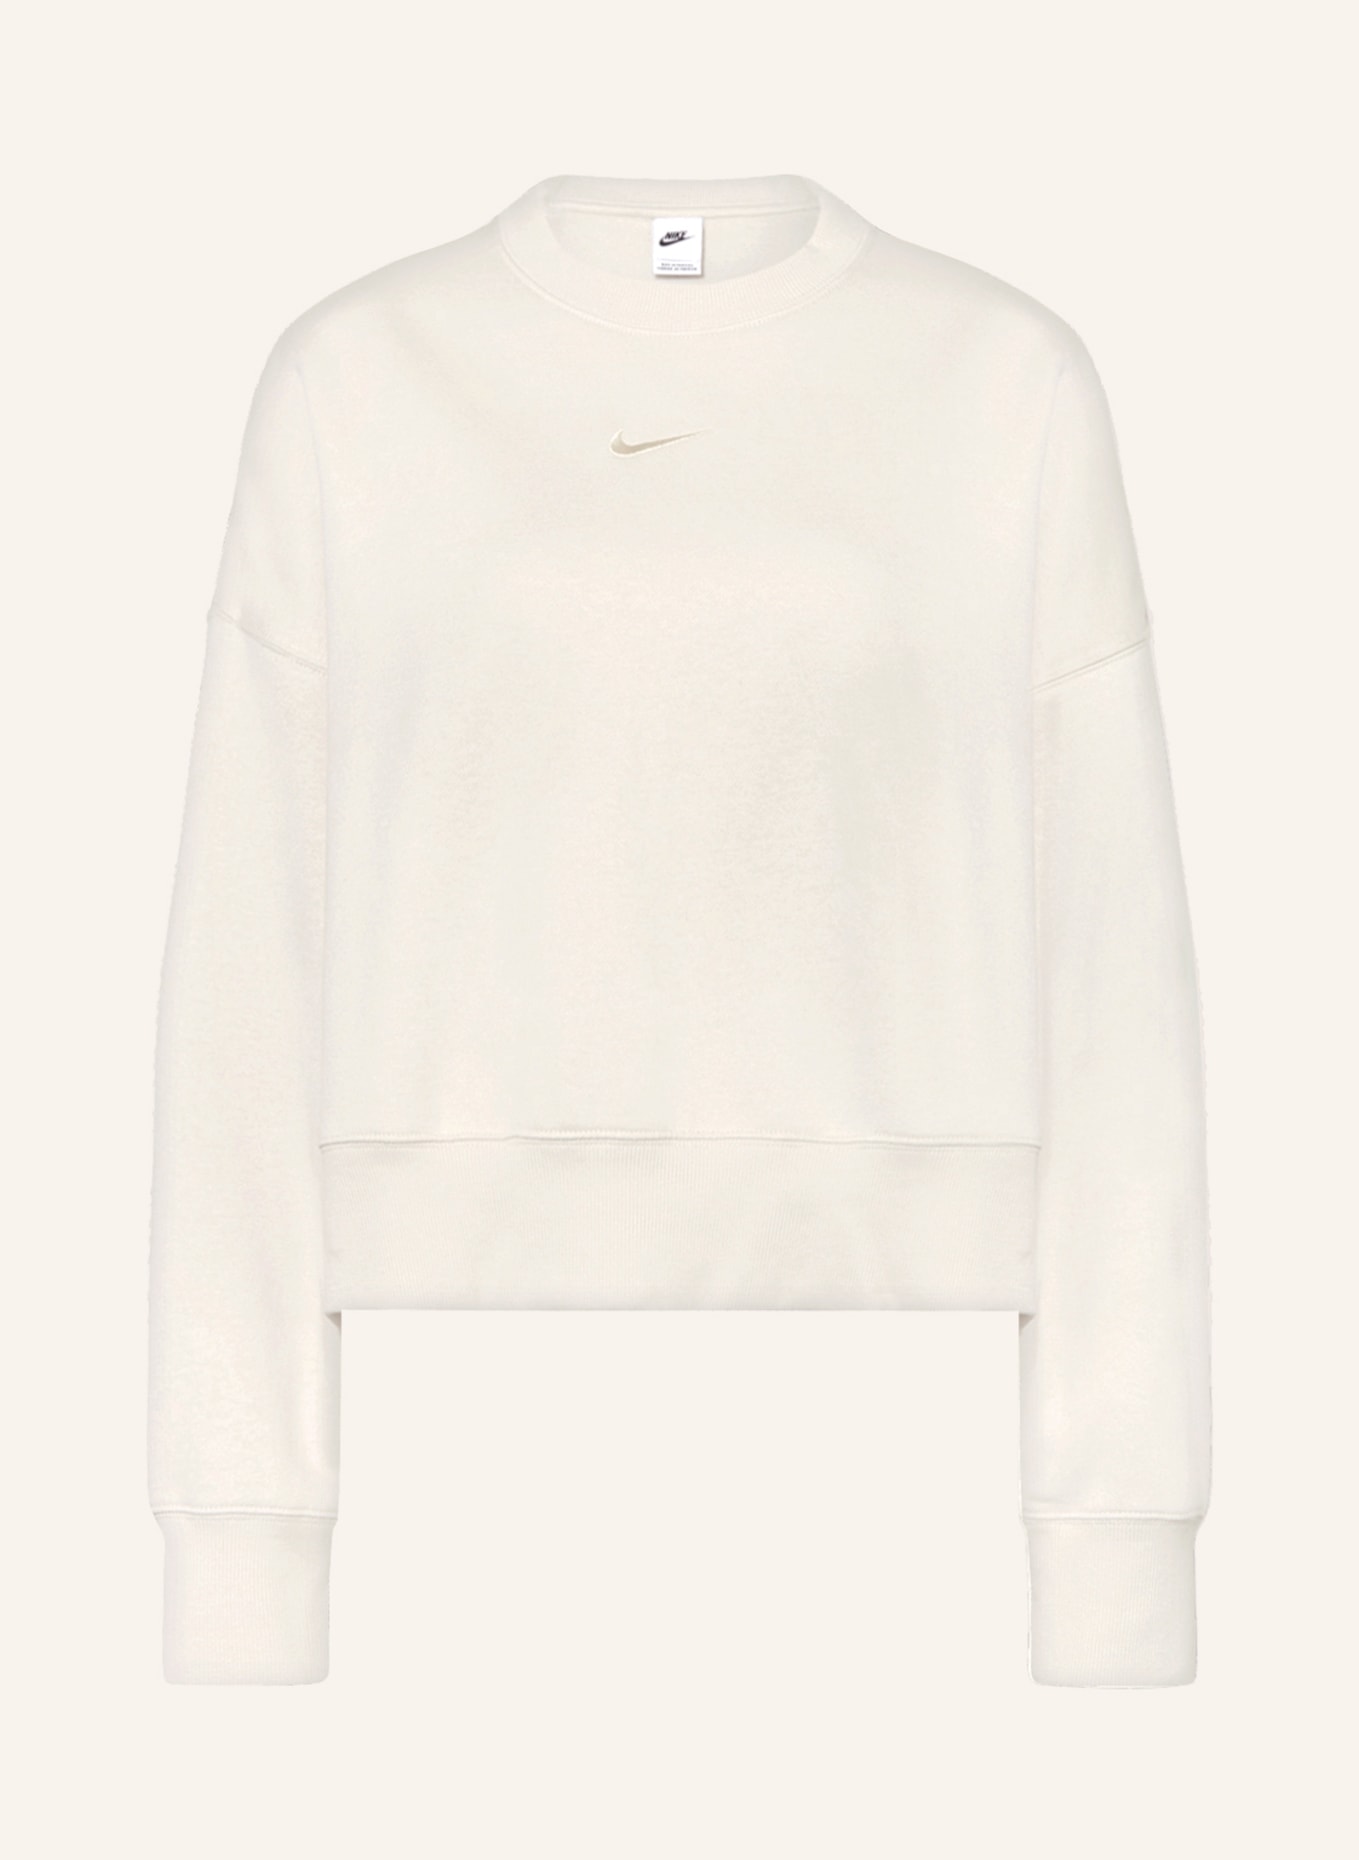 Nike Sweatshirt PHOENIX, Color: ECRU (Image 1)